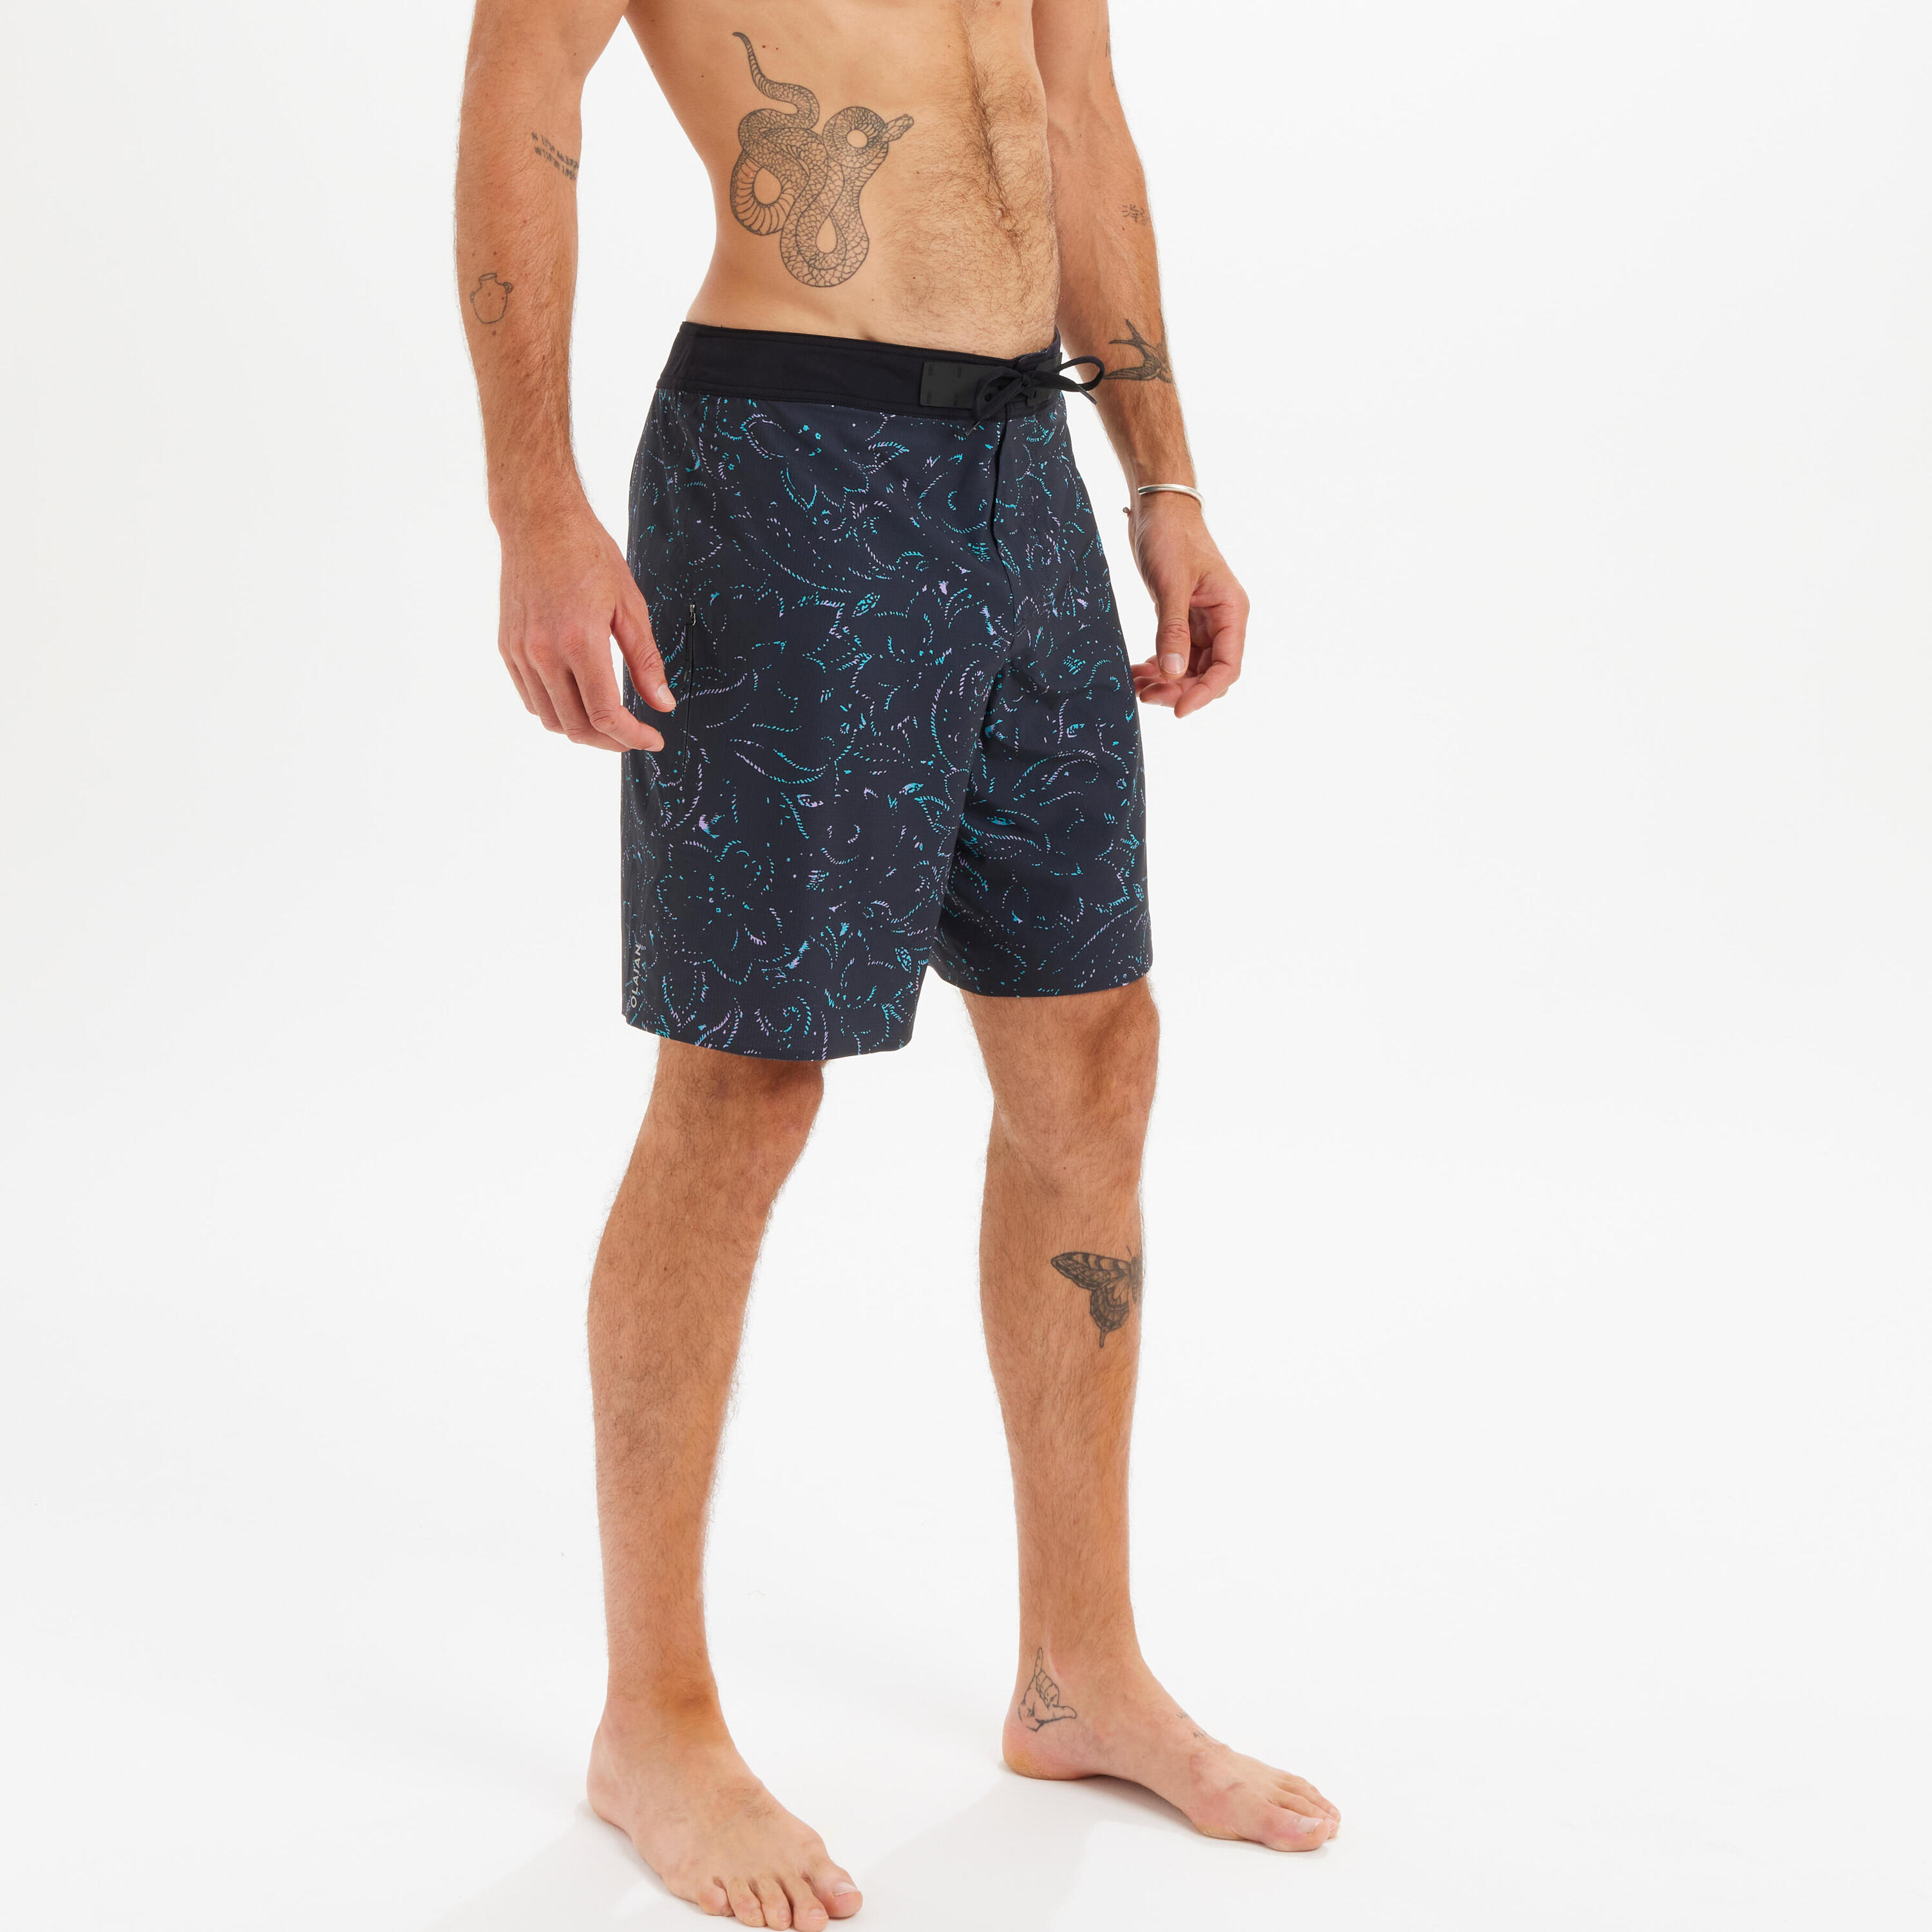 OLAIAN Men's Swim Shorts 19" - 900 lumos black